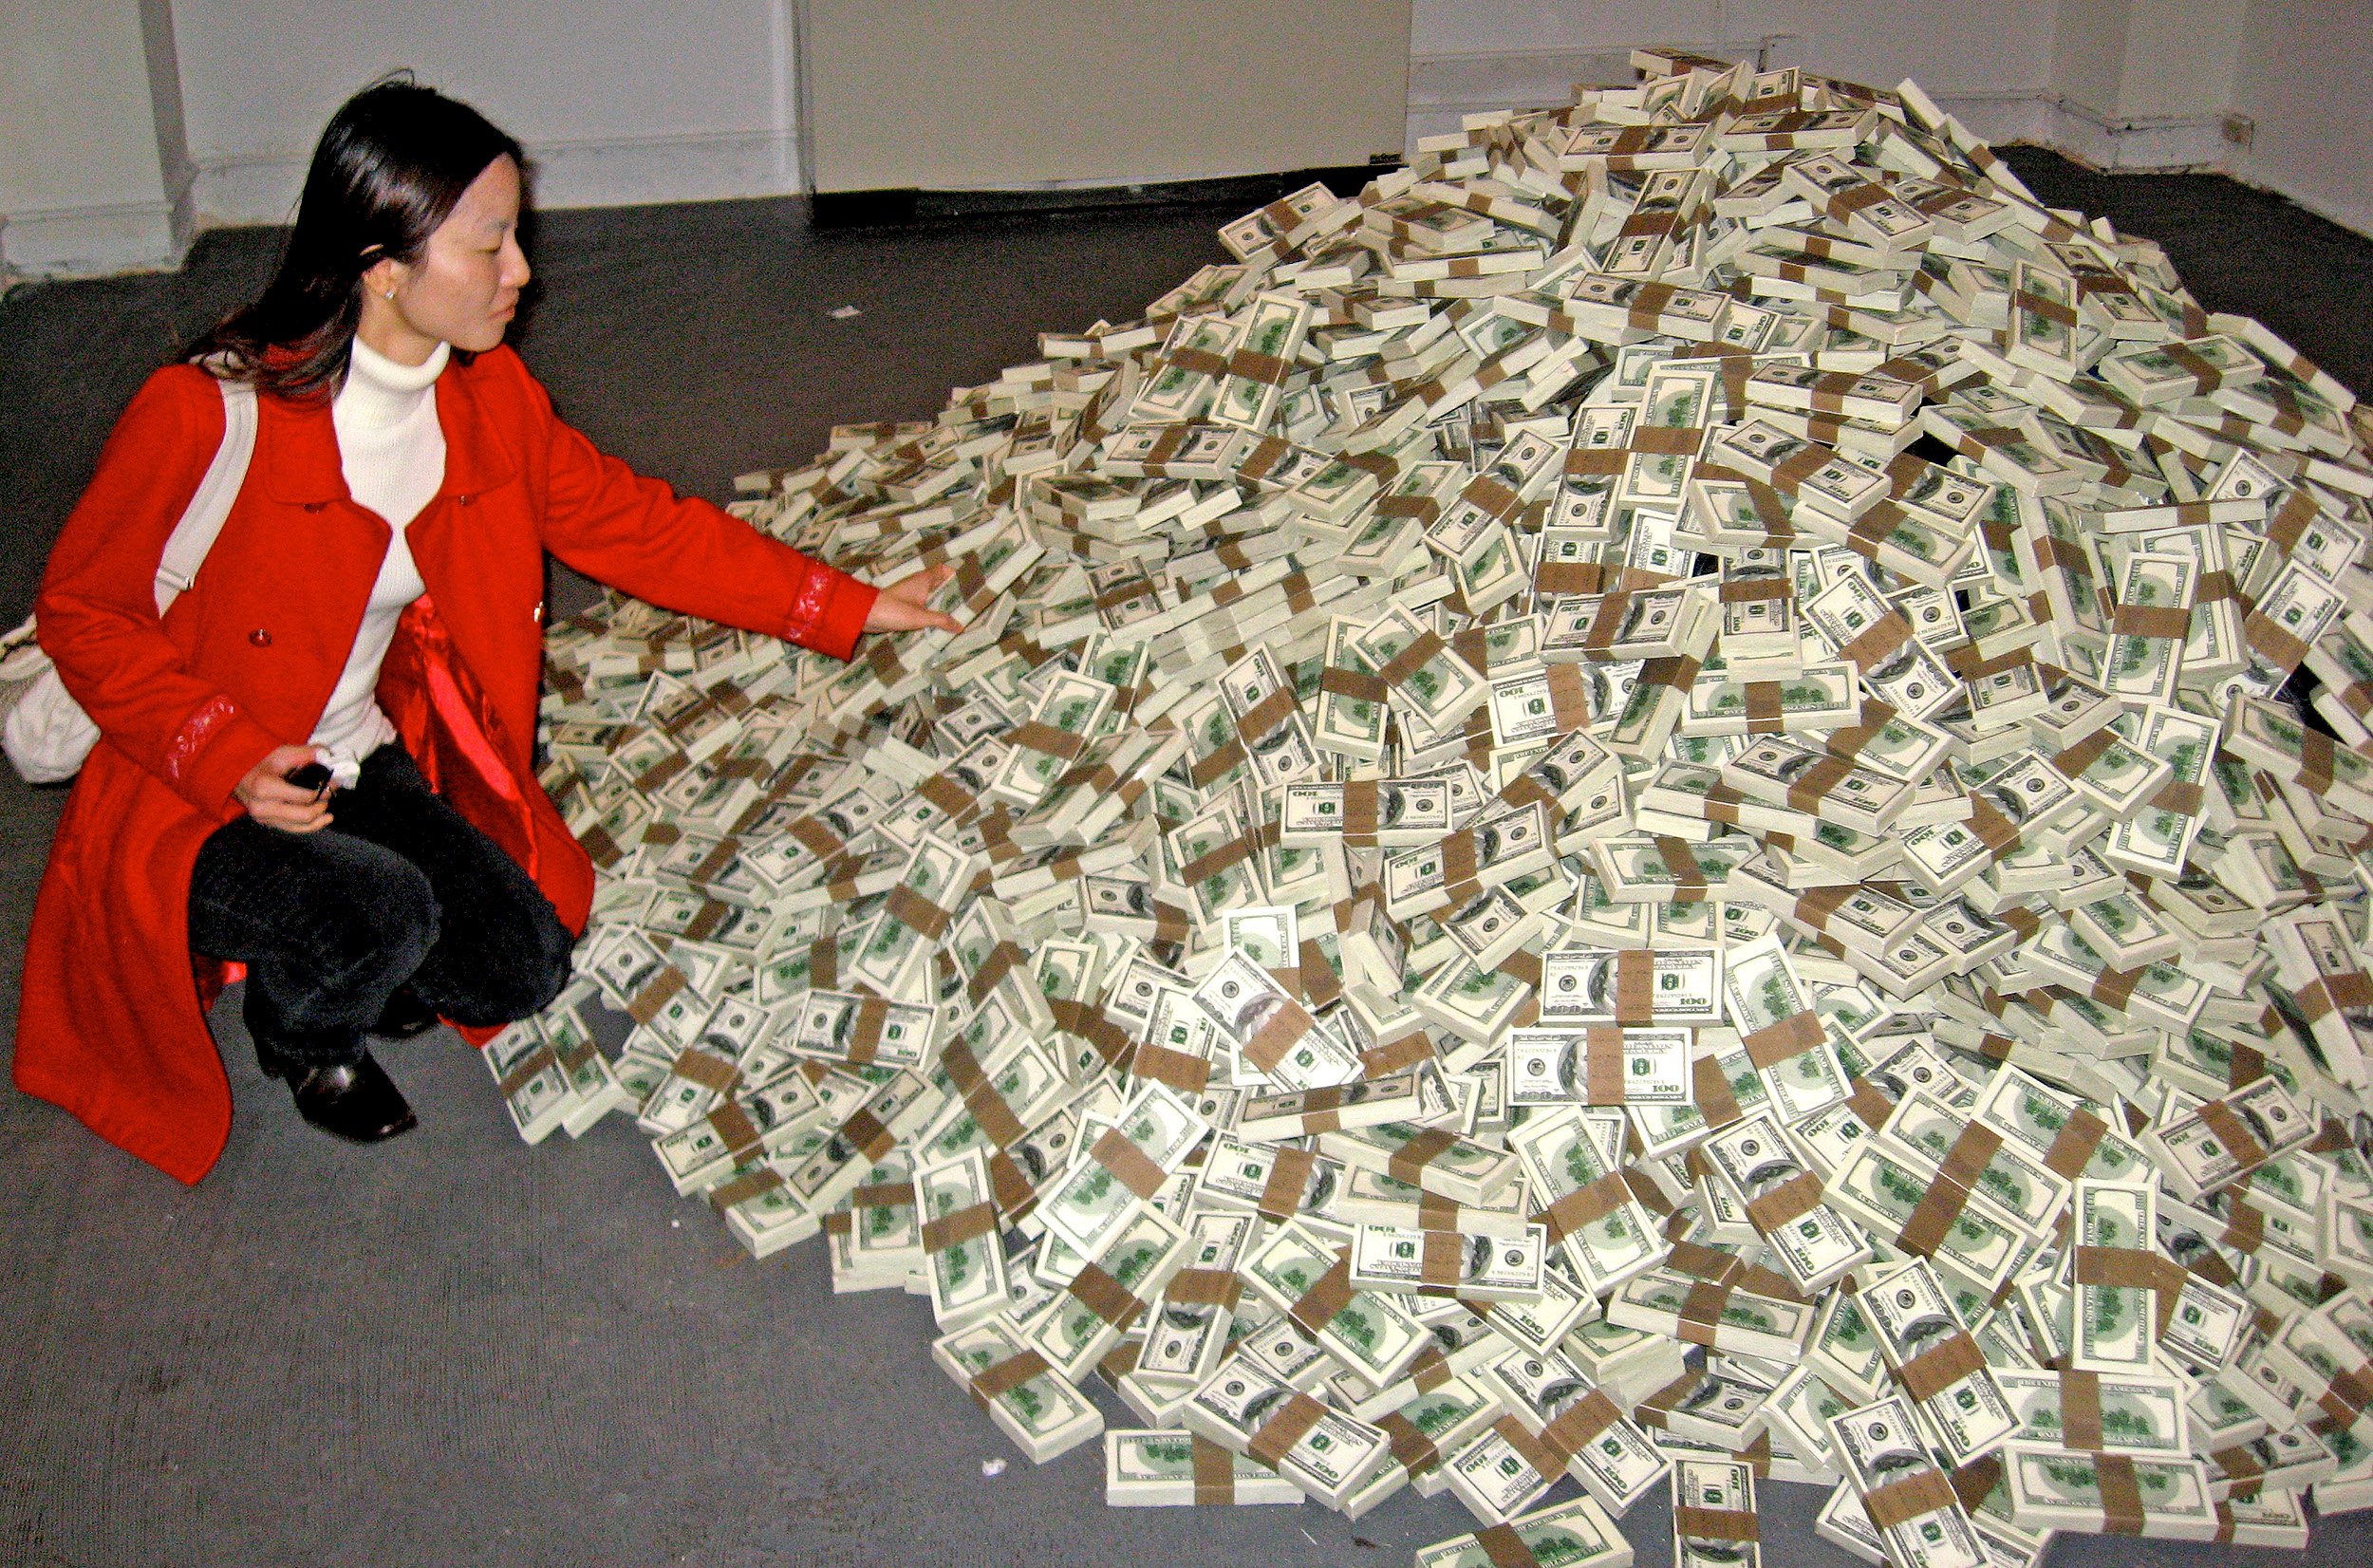 20 Awesome Photos of Insane Amounts of Cash | Celebrity Net Worth